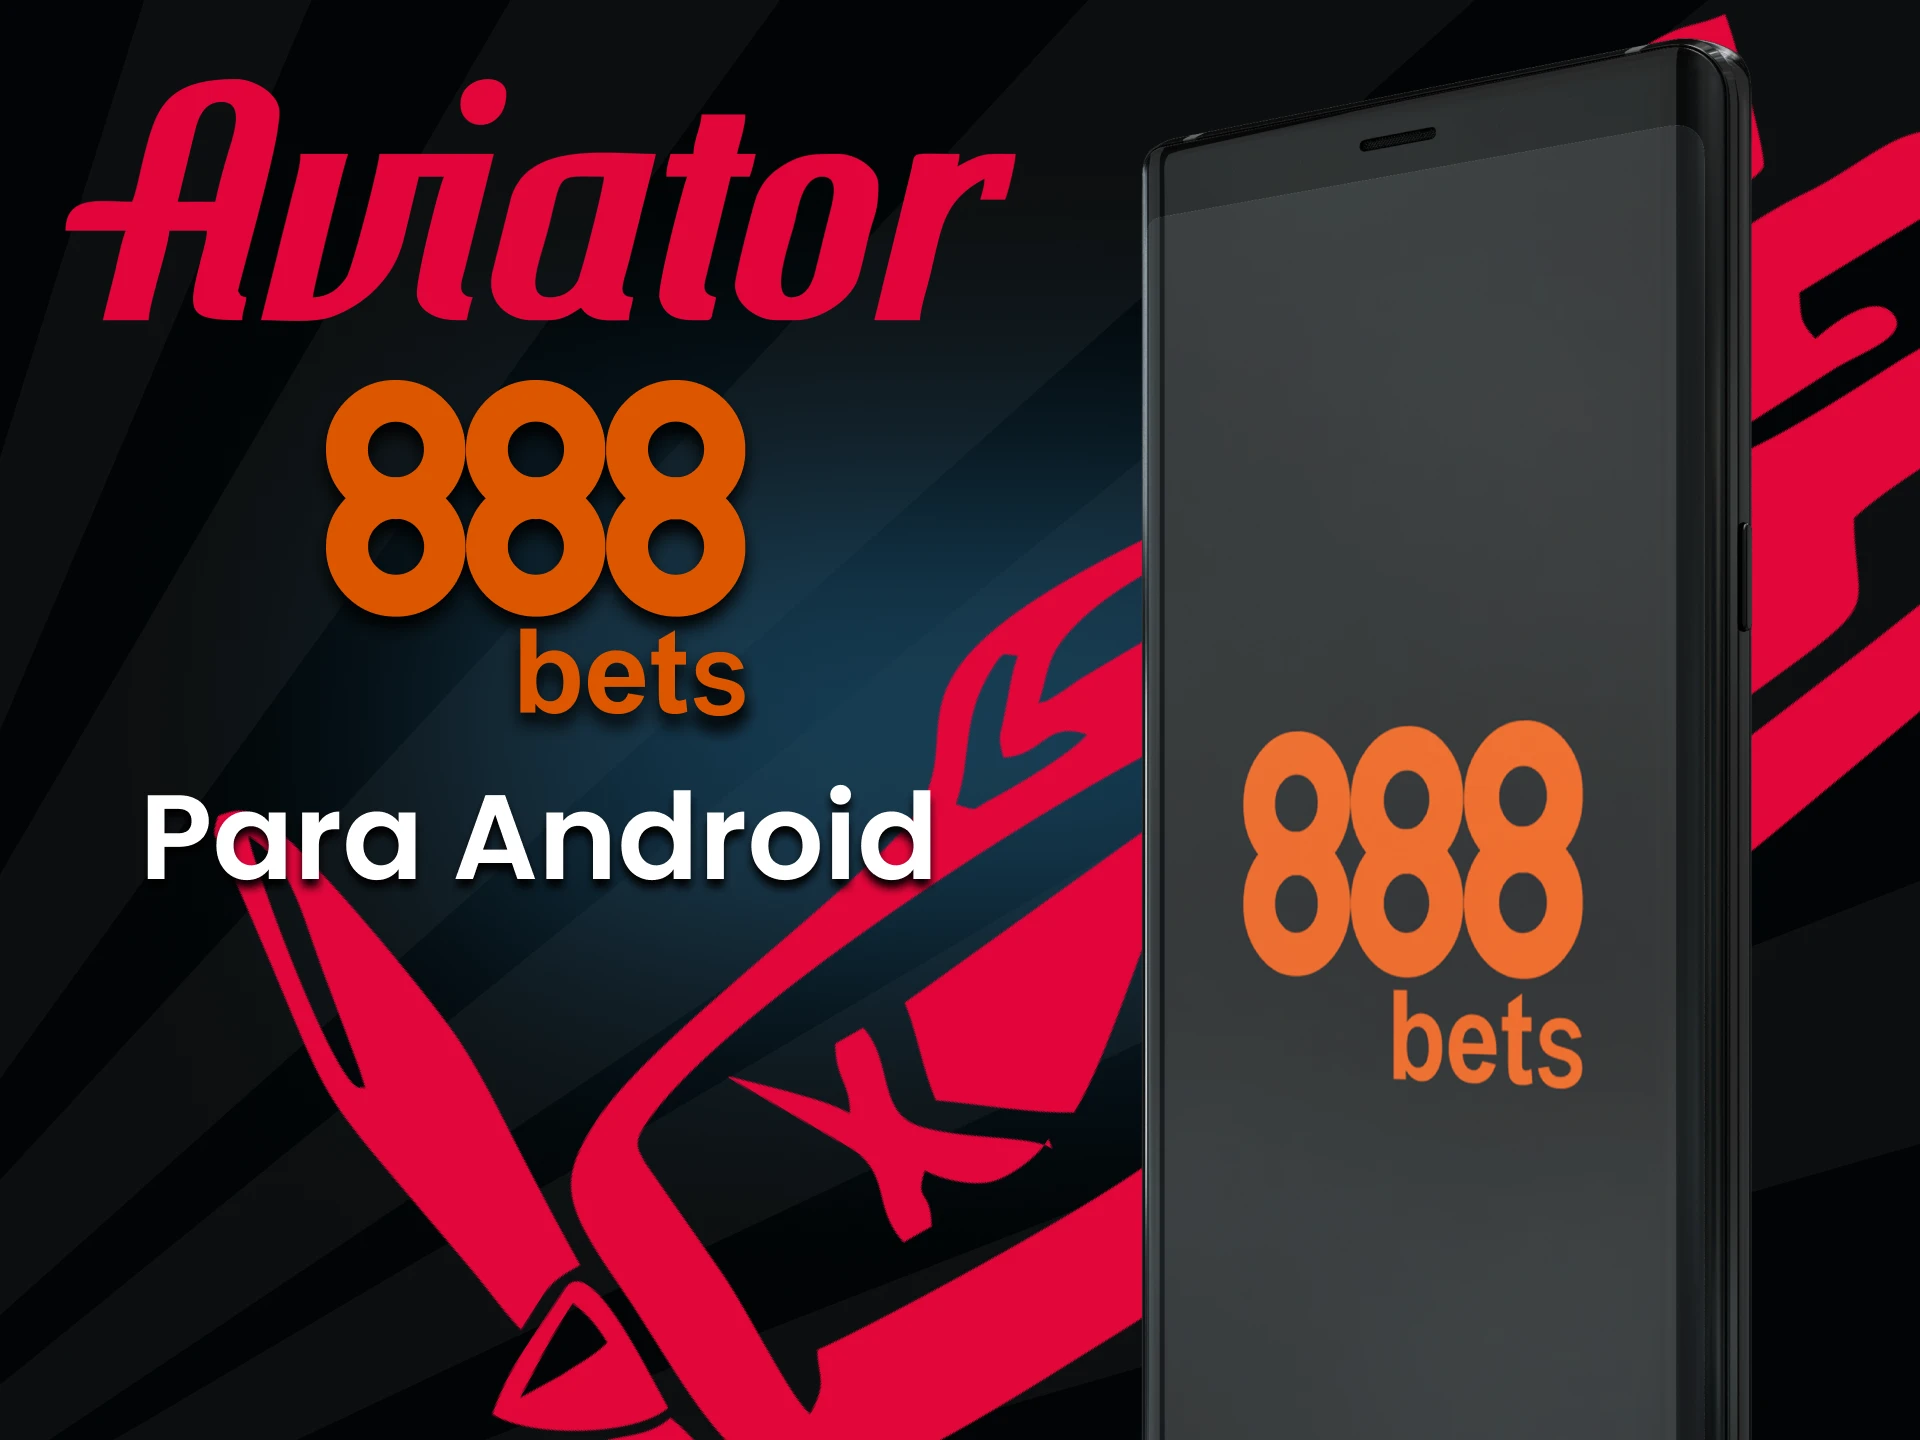 Jogue Aviator no 888bets através do seu dispositivo Android.